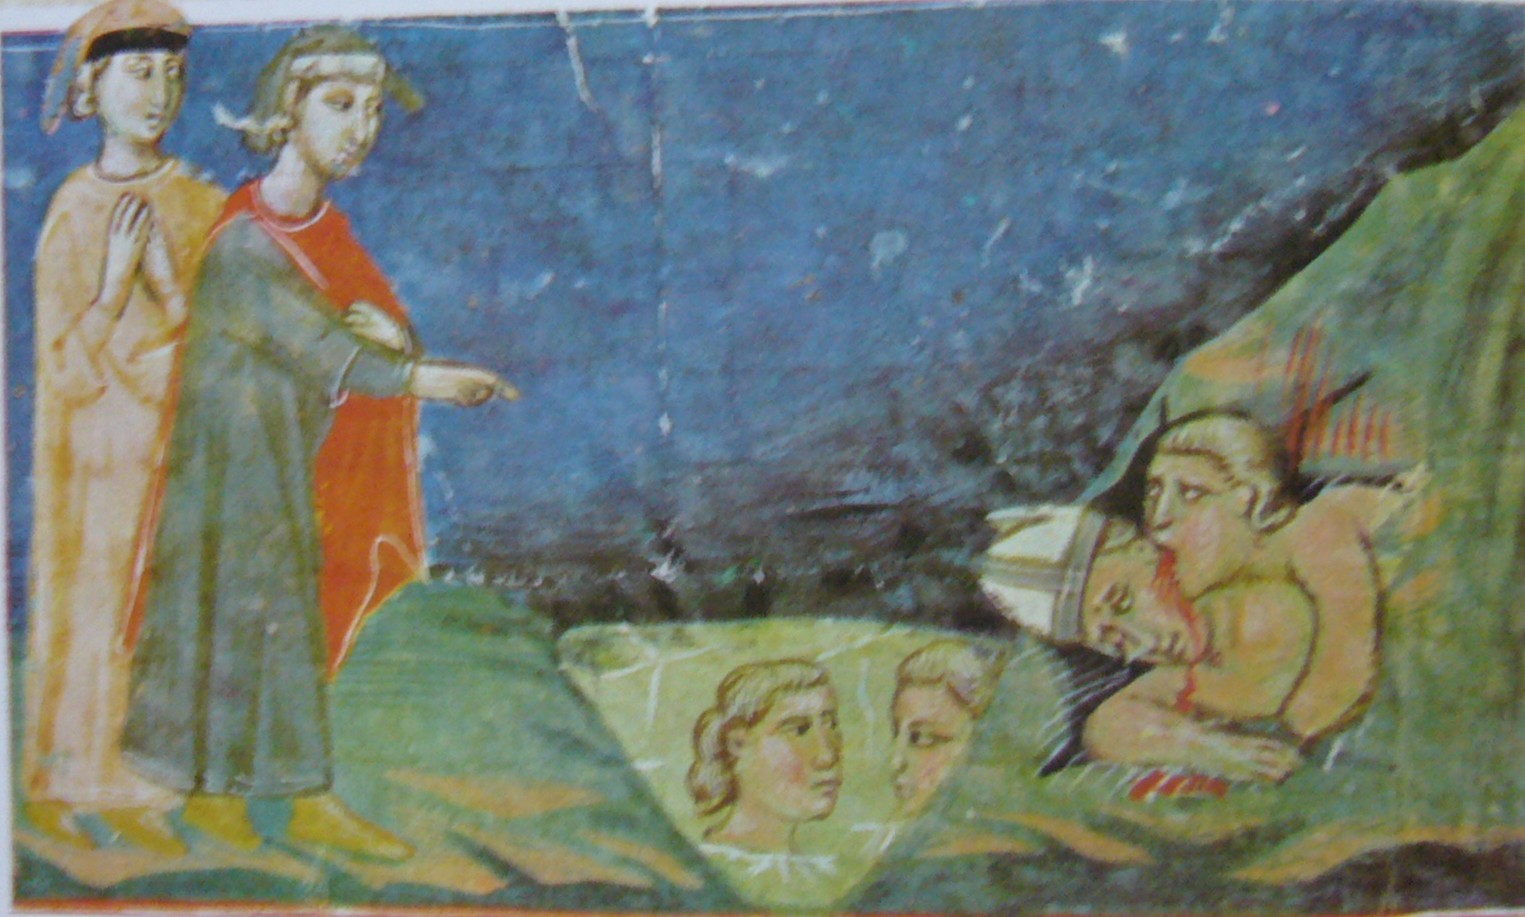 TRĂDĂTORII DE OASPEŢI ŞI DE BINEFĂCĂTORI 
[Miniatura florentina, sec. XIV]